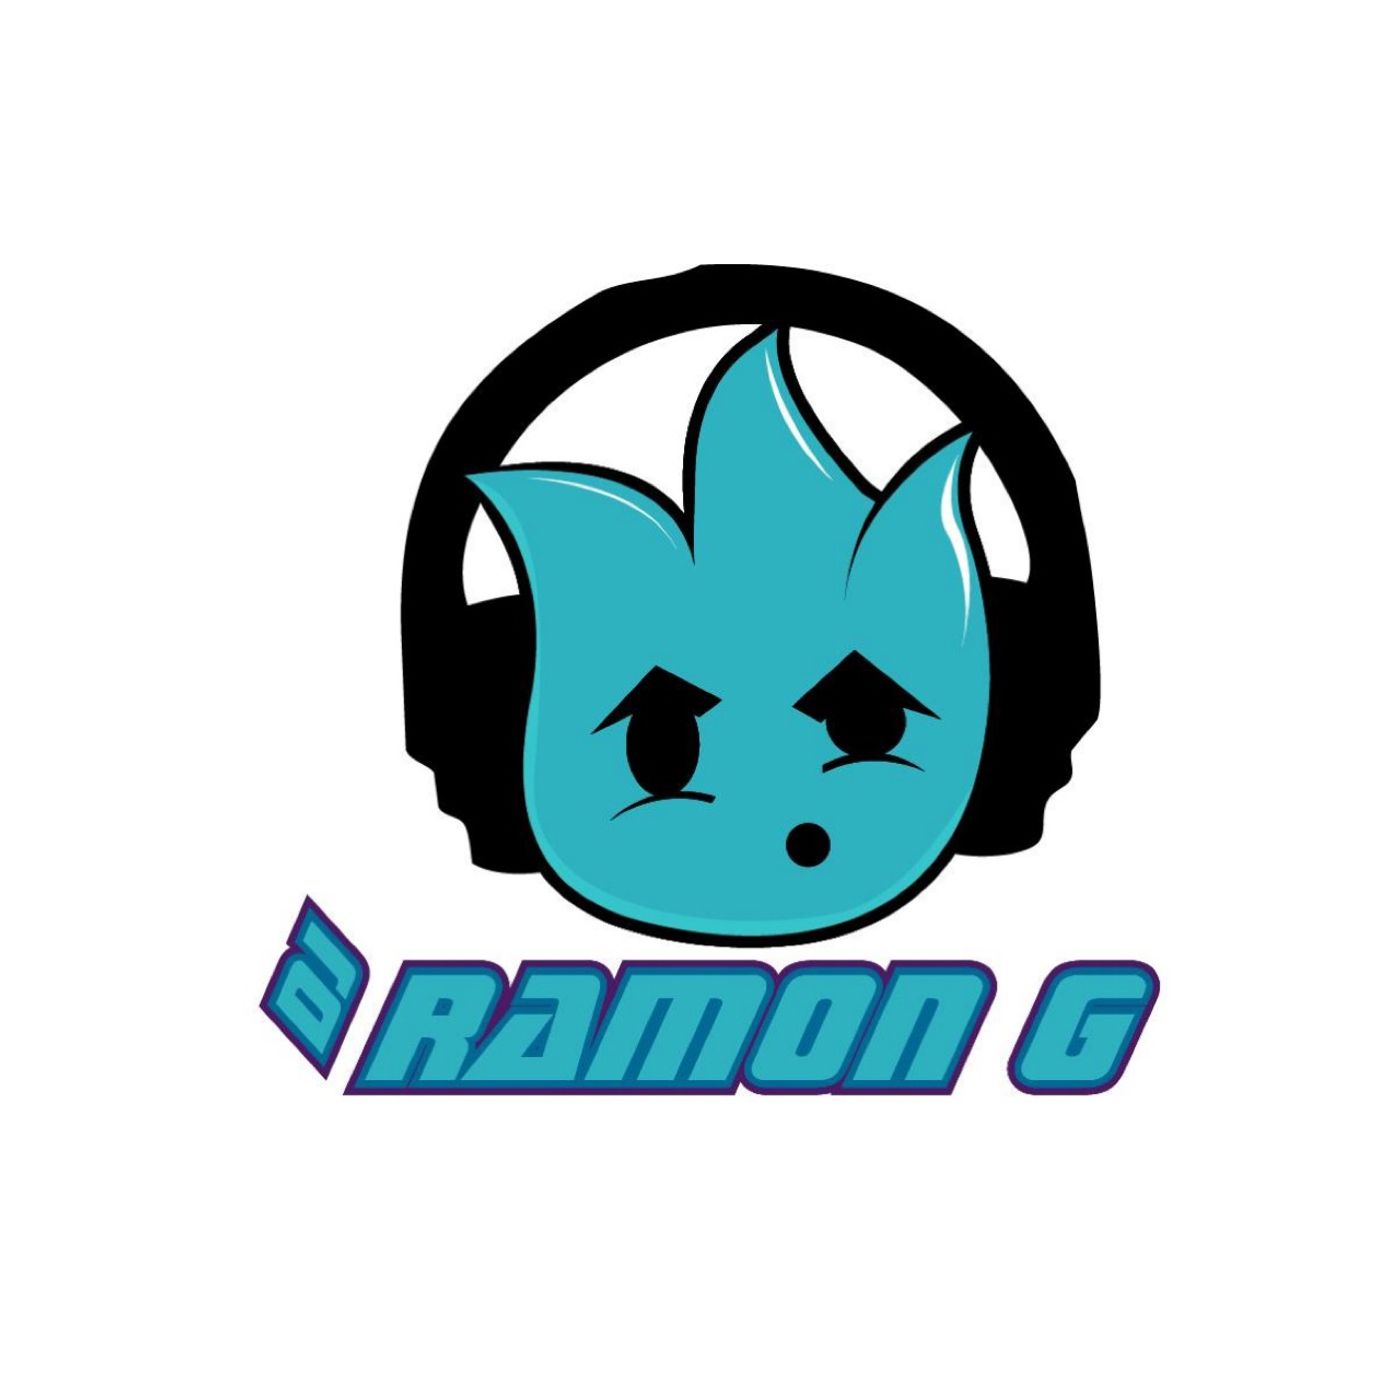 Ramon G Audios